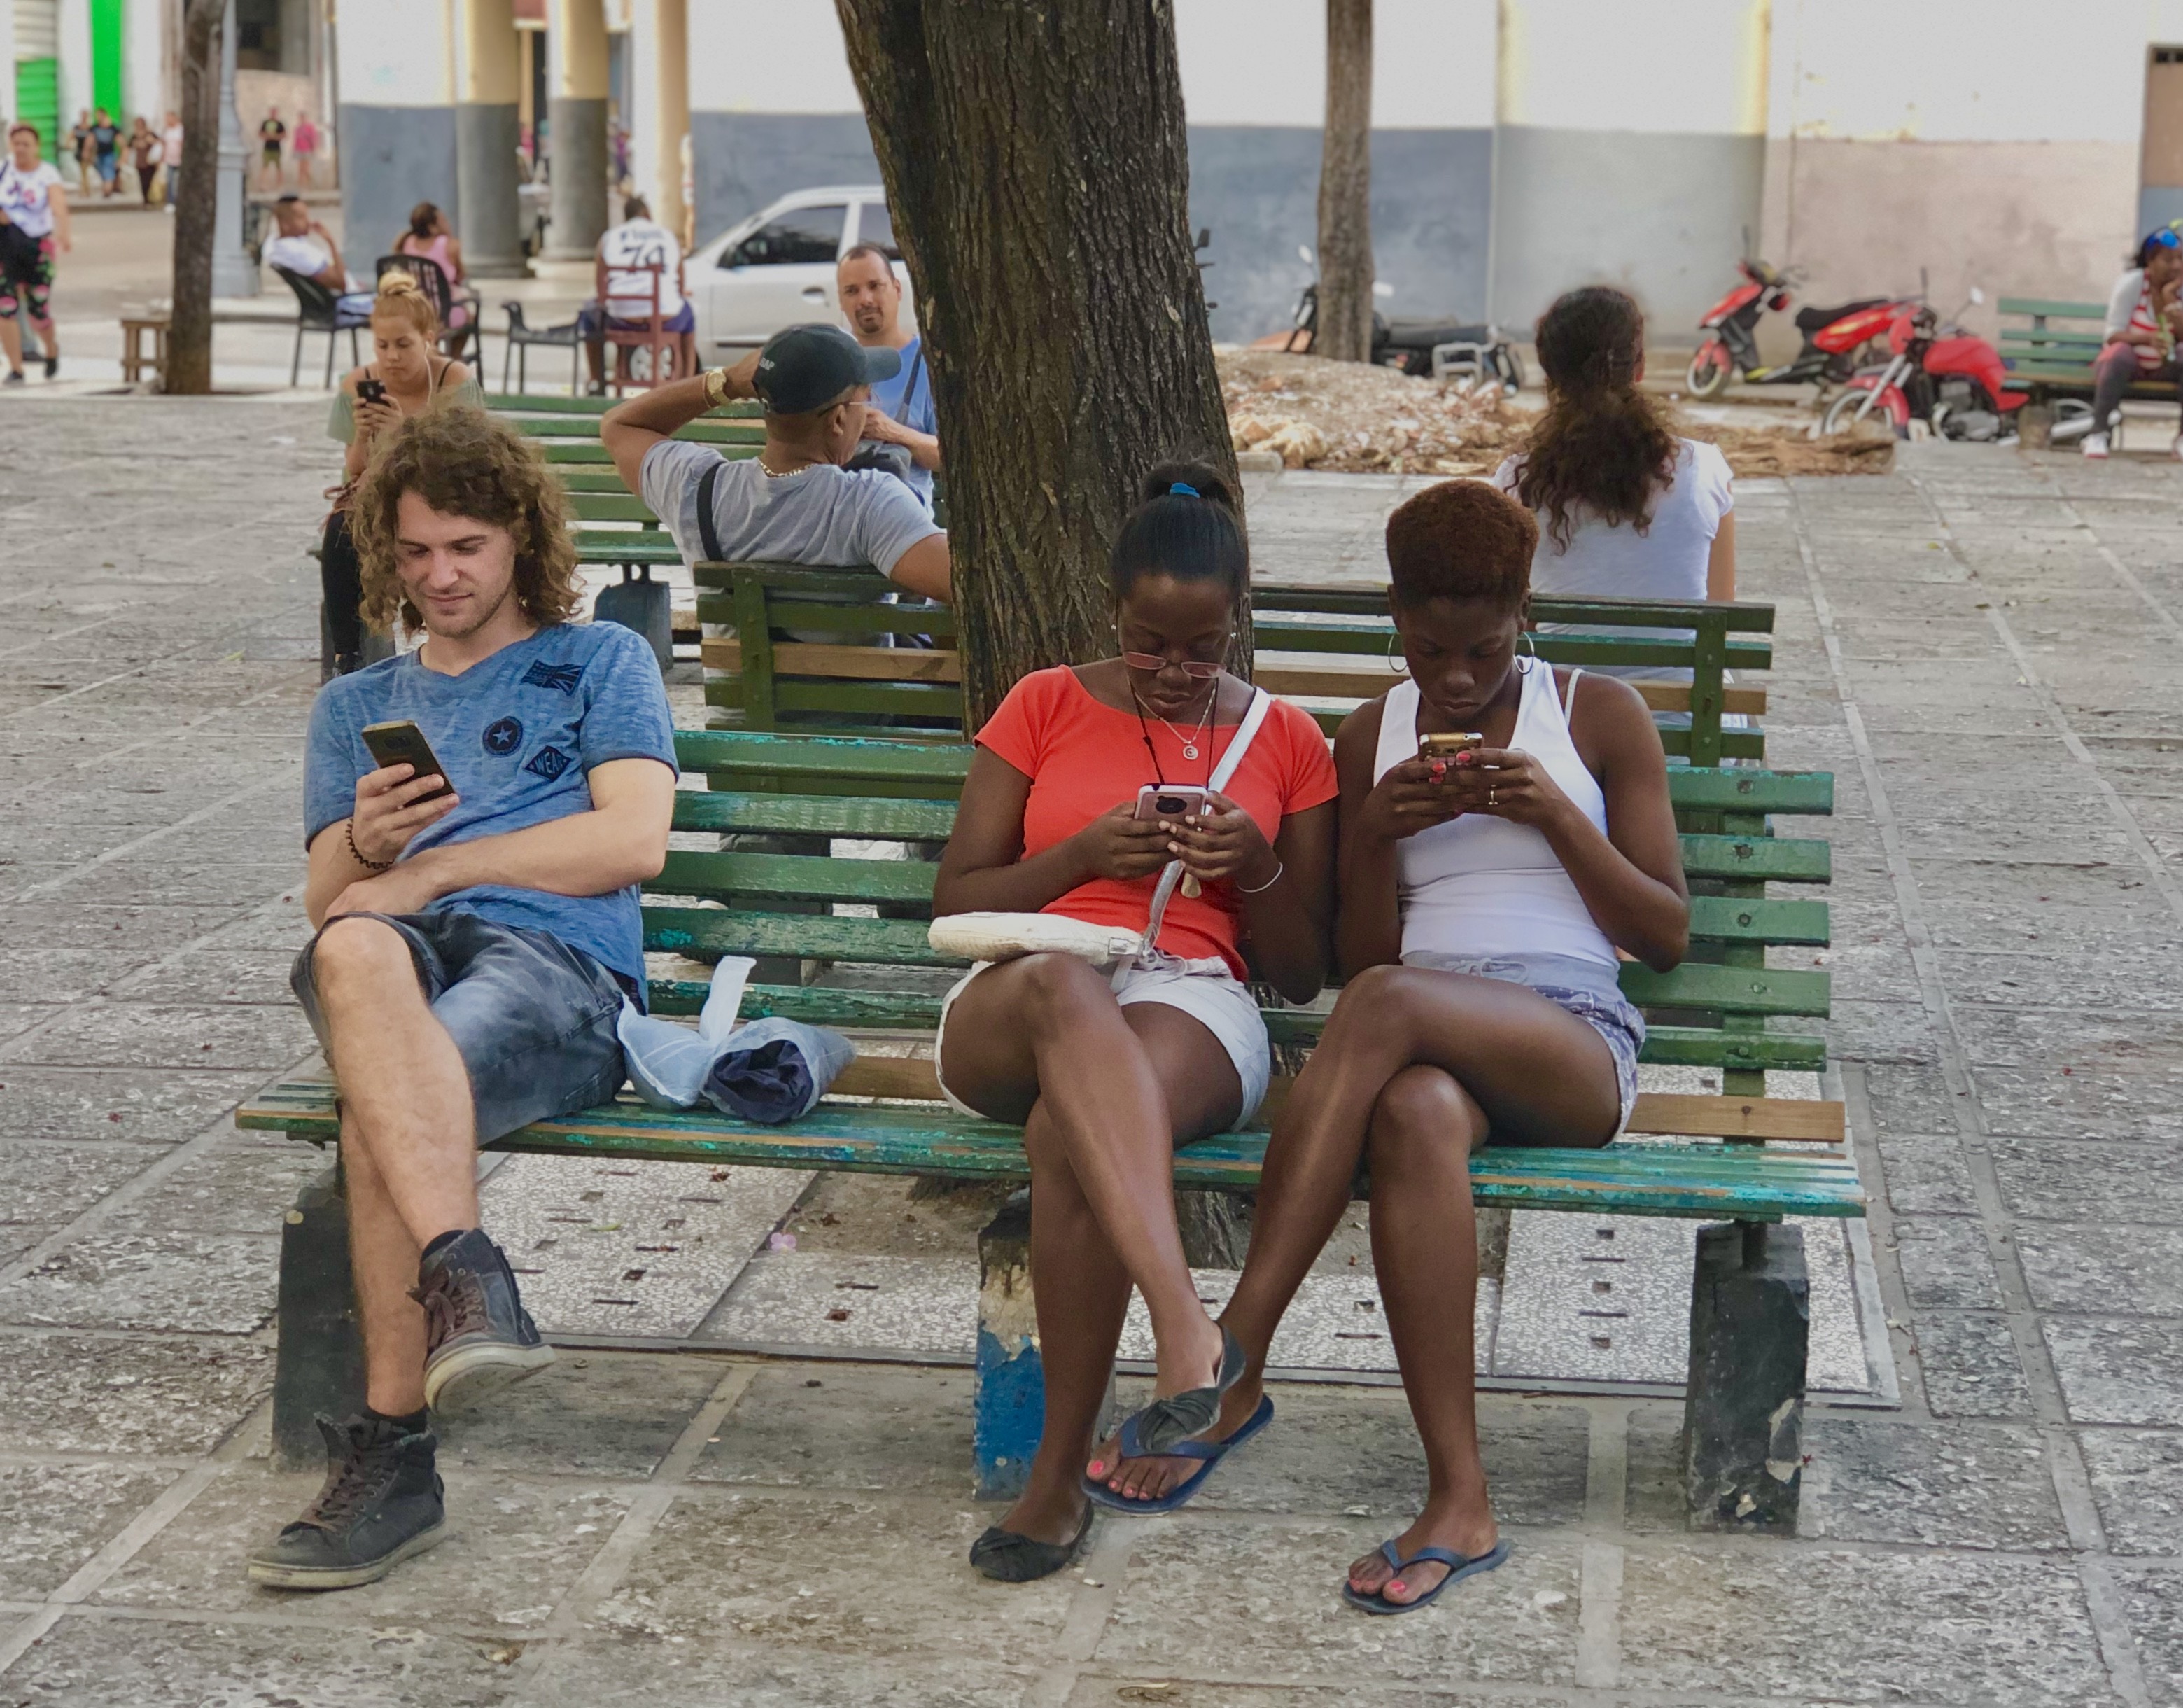 ¿Por qué Cuba es de los países con menor libertad en Internet? (Parte II y final)